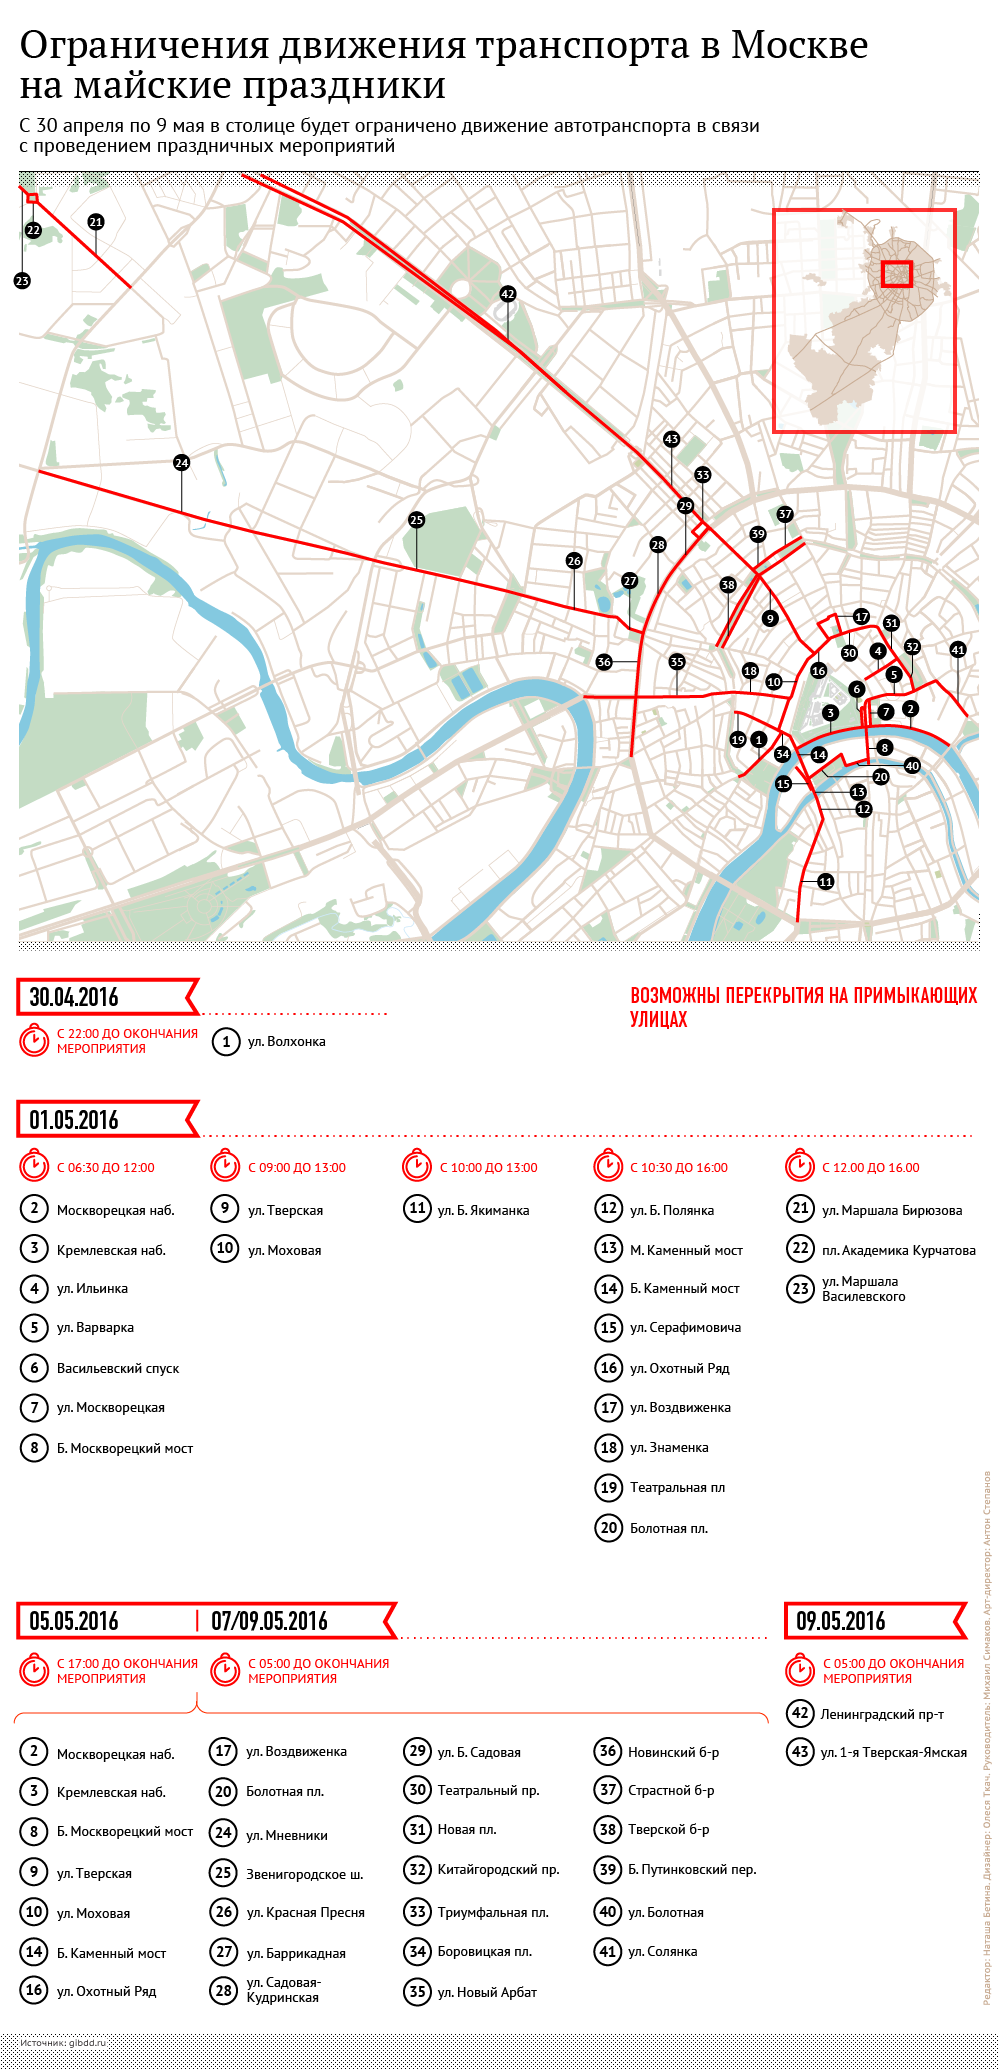 Ограничения движения транспорта в Москве на майские праздники